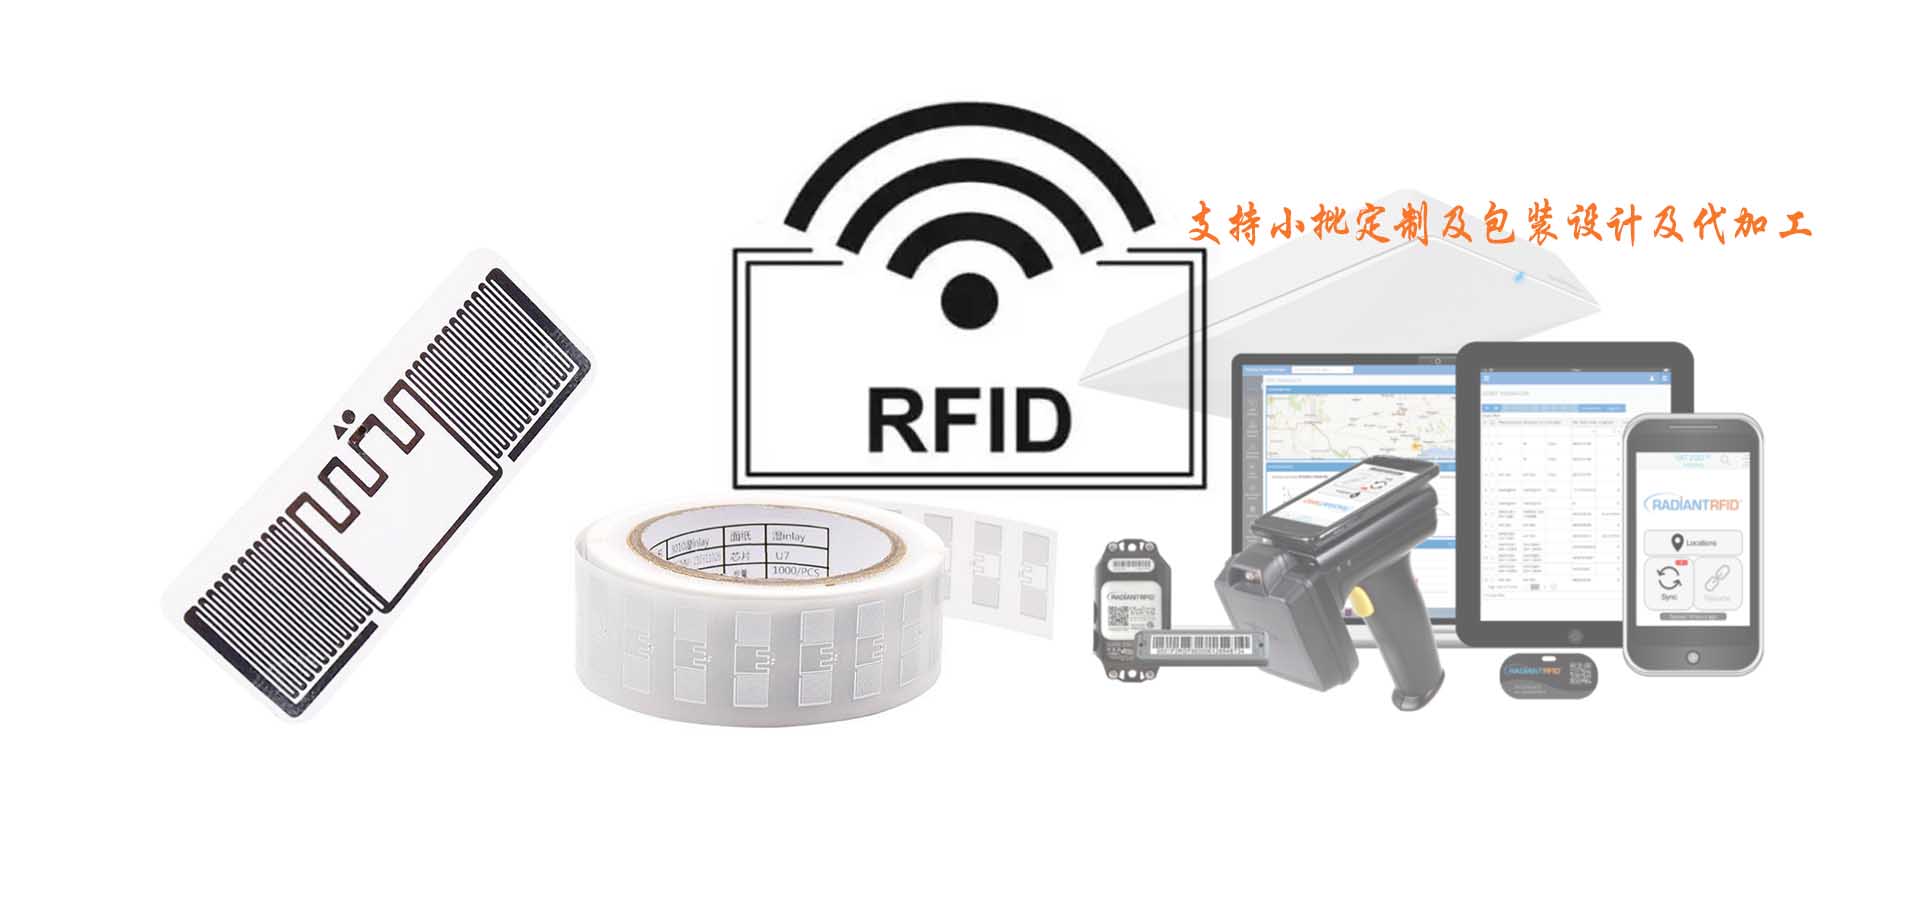 nfc|rfid标签|rfid|rfid电子标签|rfid技术